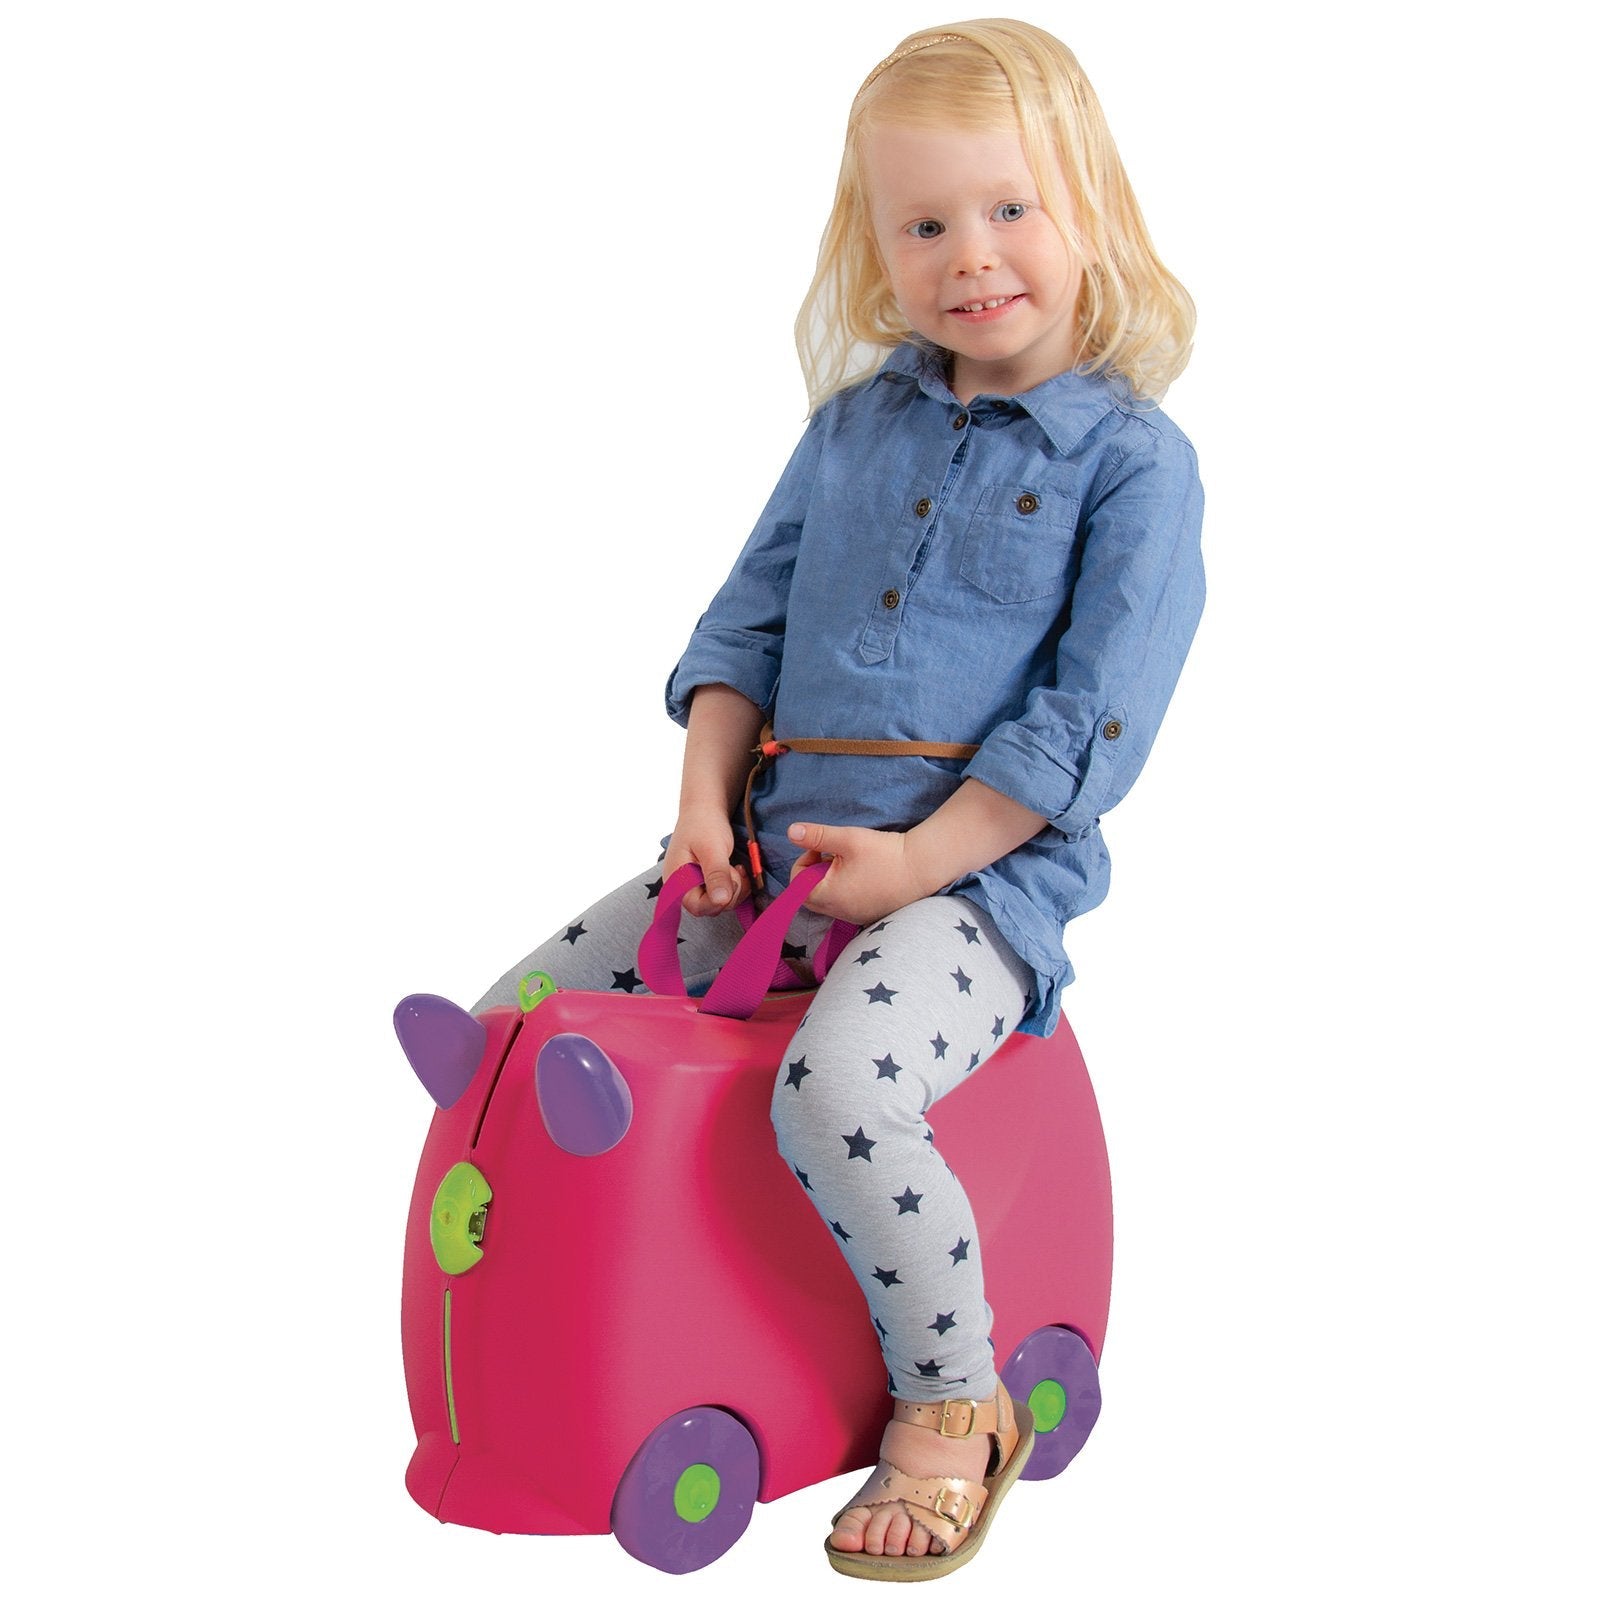 Kiddicare Bon Voyage Kids Ride on Travel Bag Pink